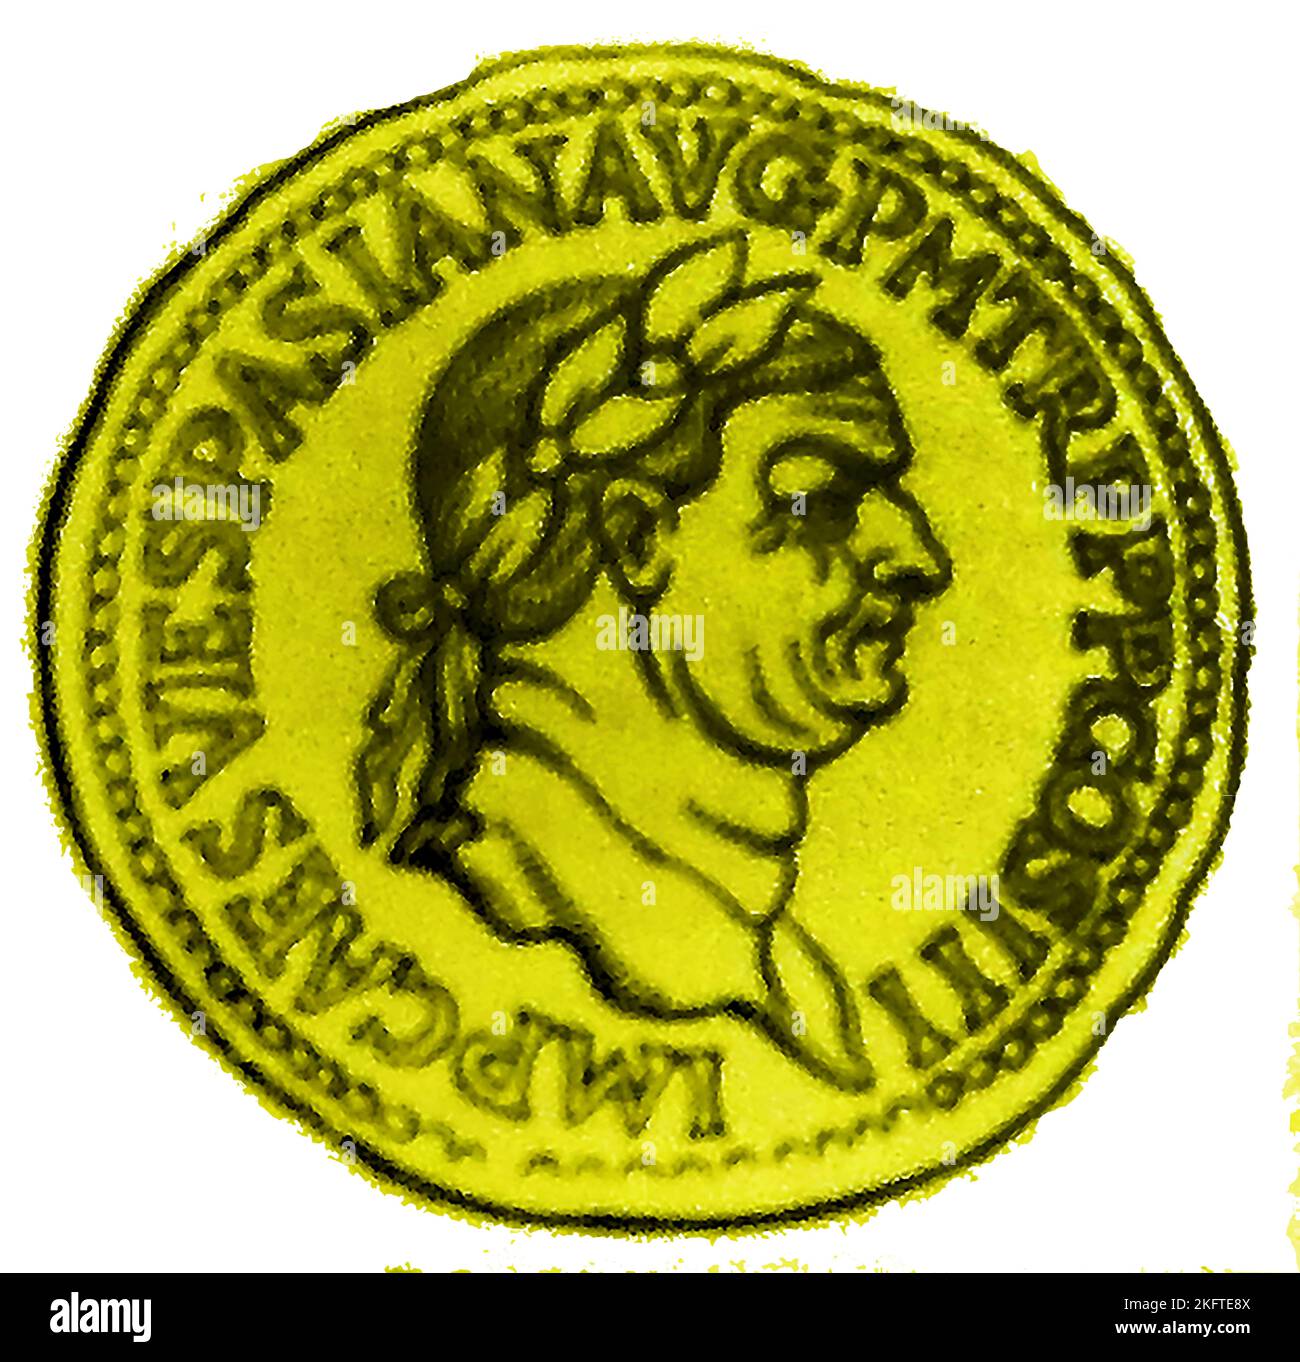 Ritratto dell'imperatore romano Tito Flavio Vespasiano o Vespasiano (9AD - 79AD) su una moneta del tempo. Egli governò dal 1 luglio 69 al 23 giugno 79 , come Imperatore Cesare Vespasiano Augusto e prese parte all'invasione romana della Gran Bretagna nel 43 d.C. ----- Un rito dell'imperatore romano Tito Flavio Vespasiano (9AD - 79AD) su una moneta del tempo. Regnò come Imperatore Cesare Vespasiano Augusto. . . Regnò dal 1o luglio 69 al 23 giugno 79. Foto Stock